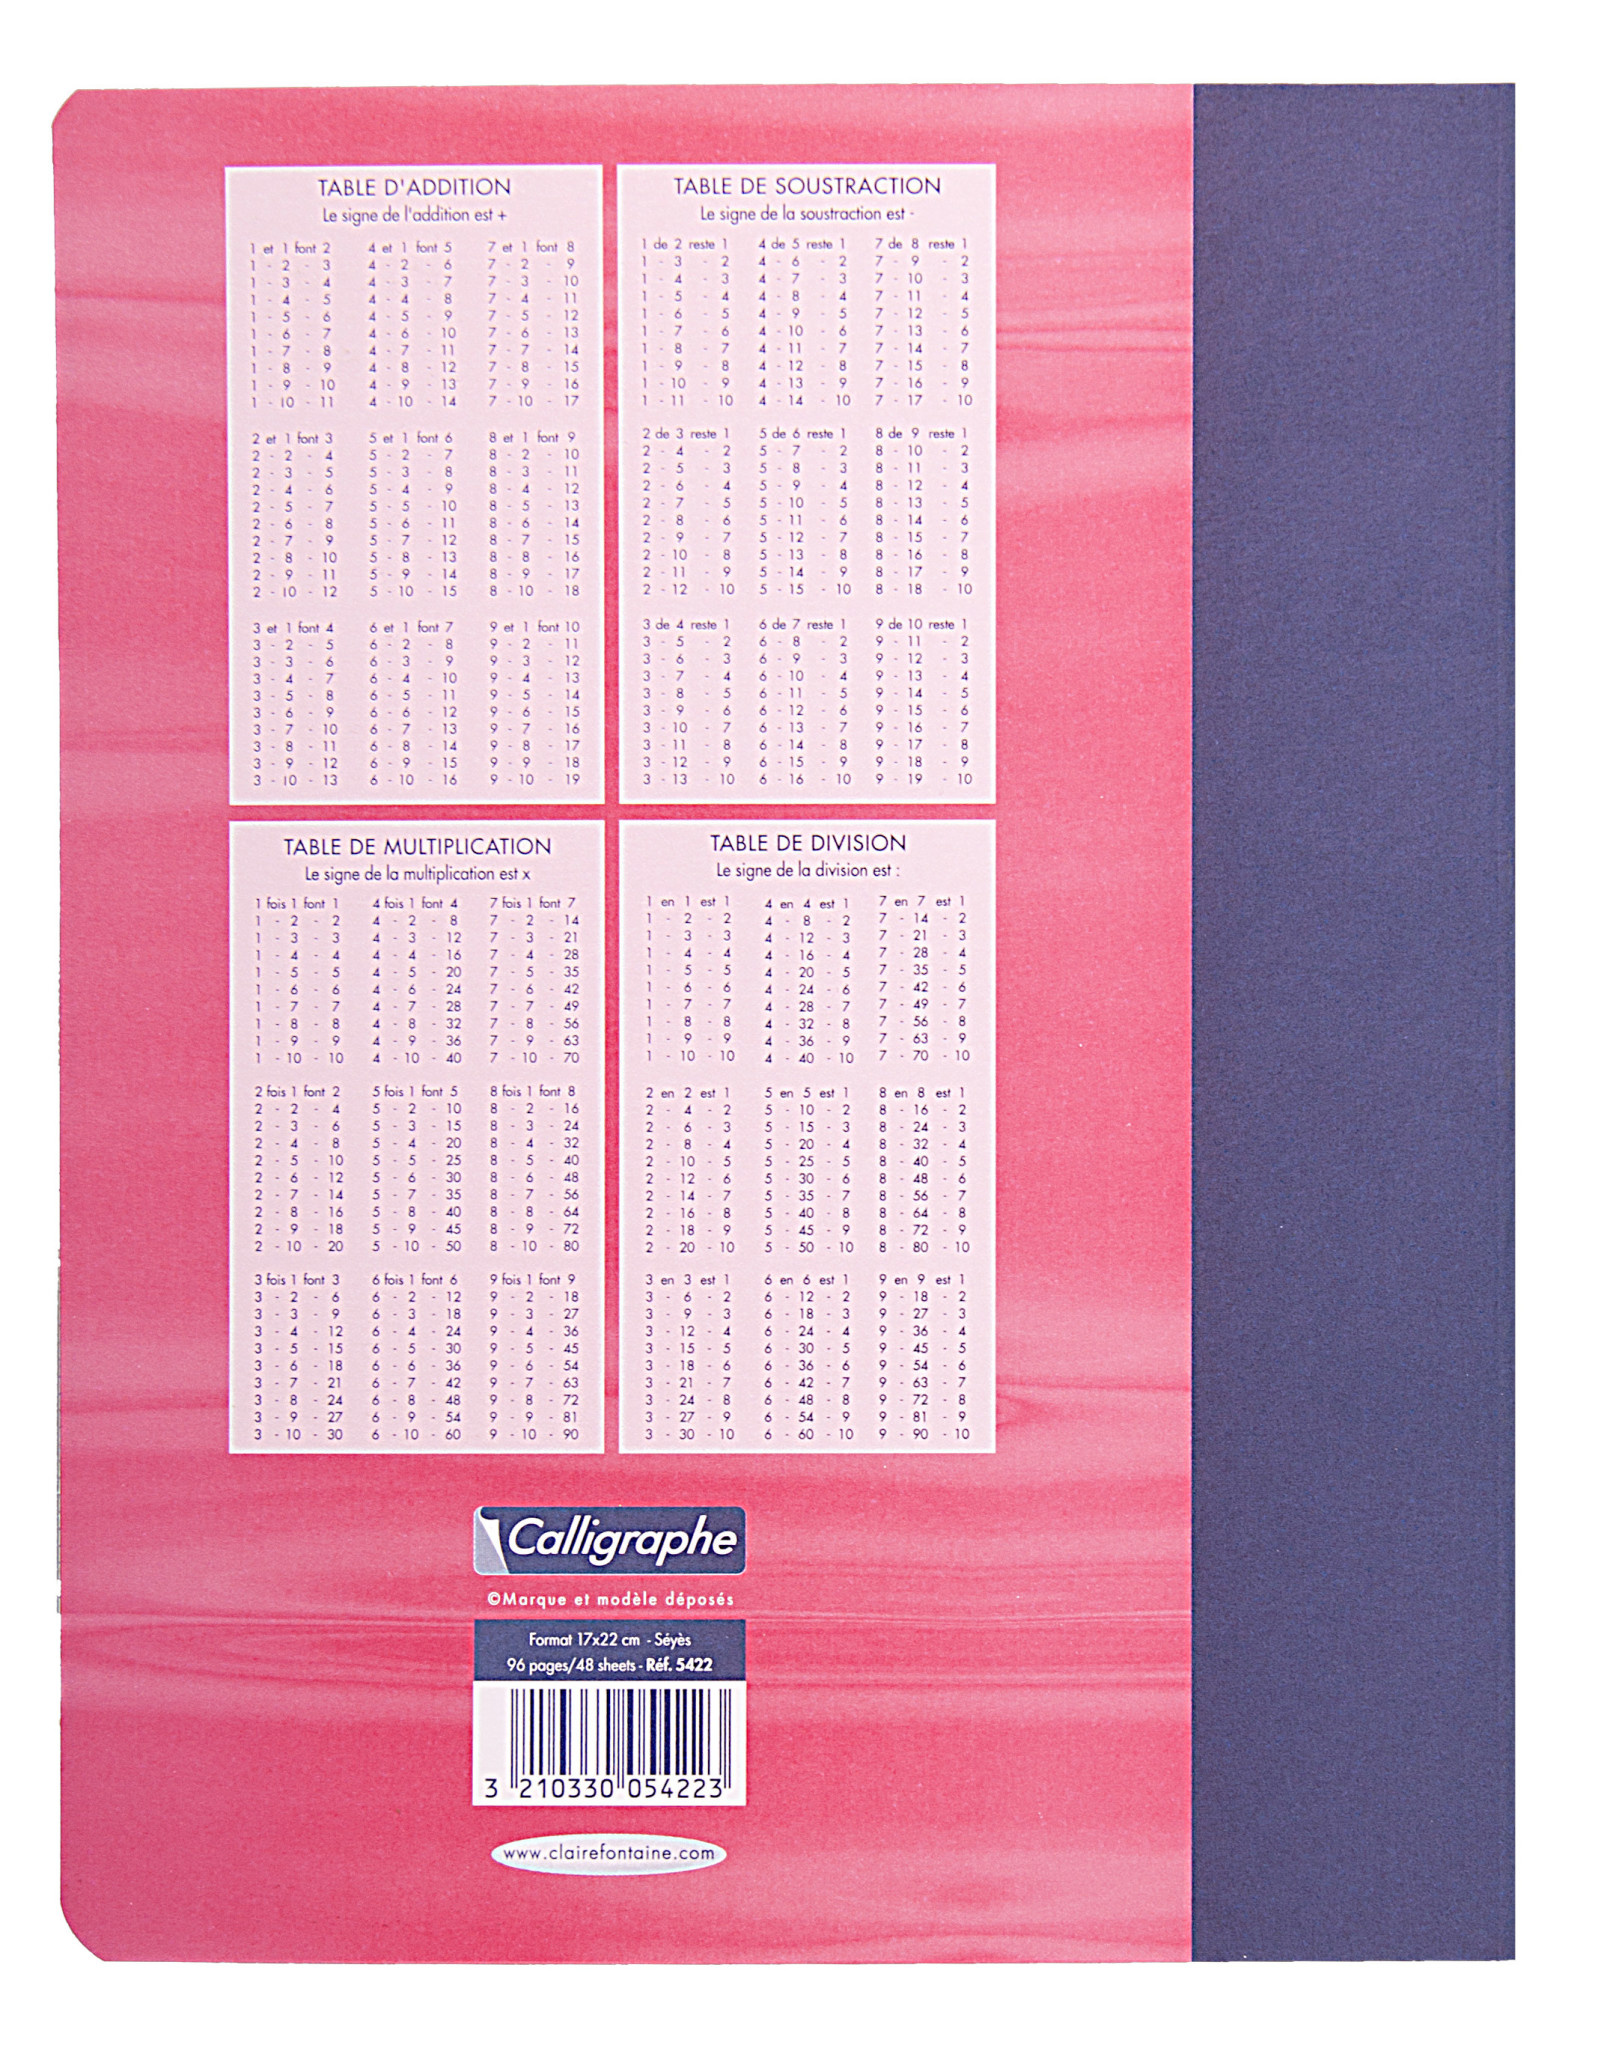 Mon Petit Brouillon: Cahier de brouillon enfant, GRANDS CARREAUX SEYES, 96  pages, d'écriture, maternelle, CP, CE1 ou plus, petit format entre A4 et